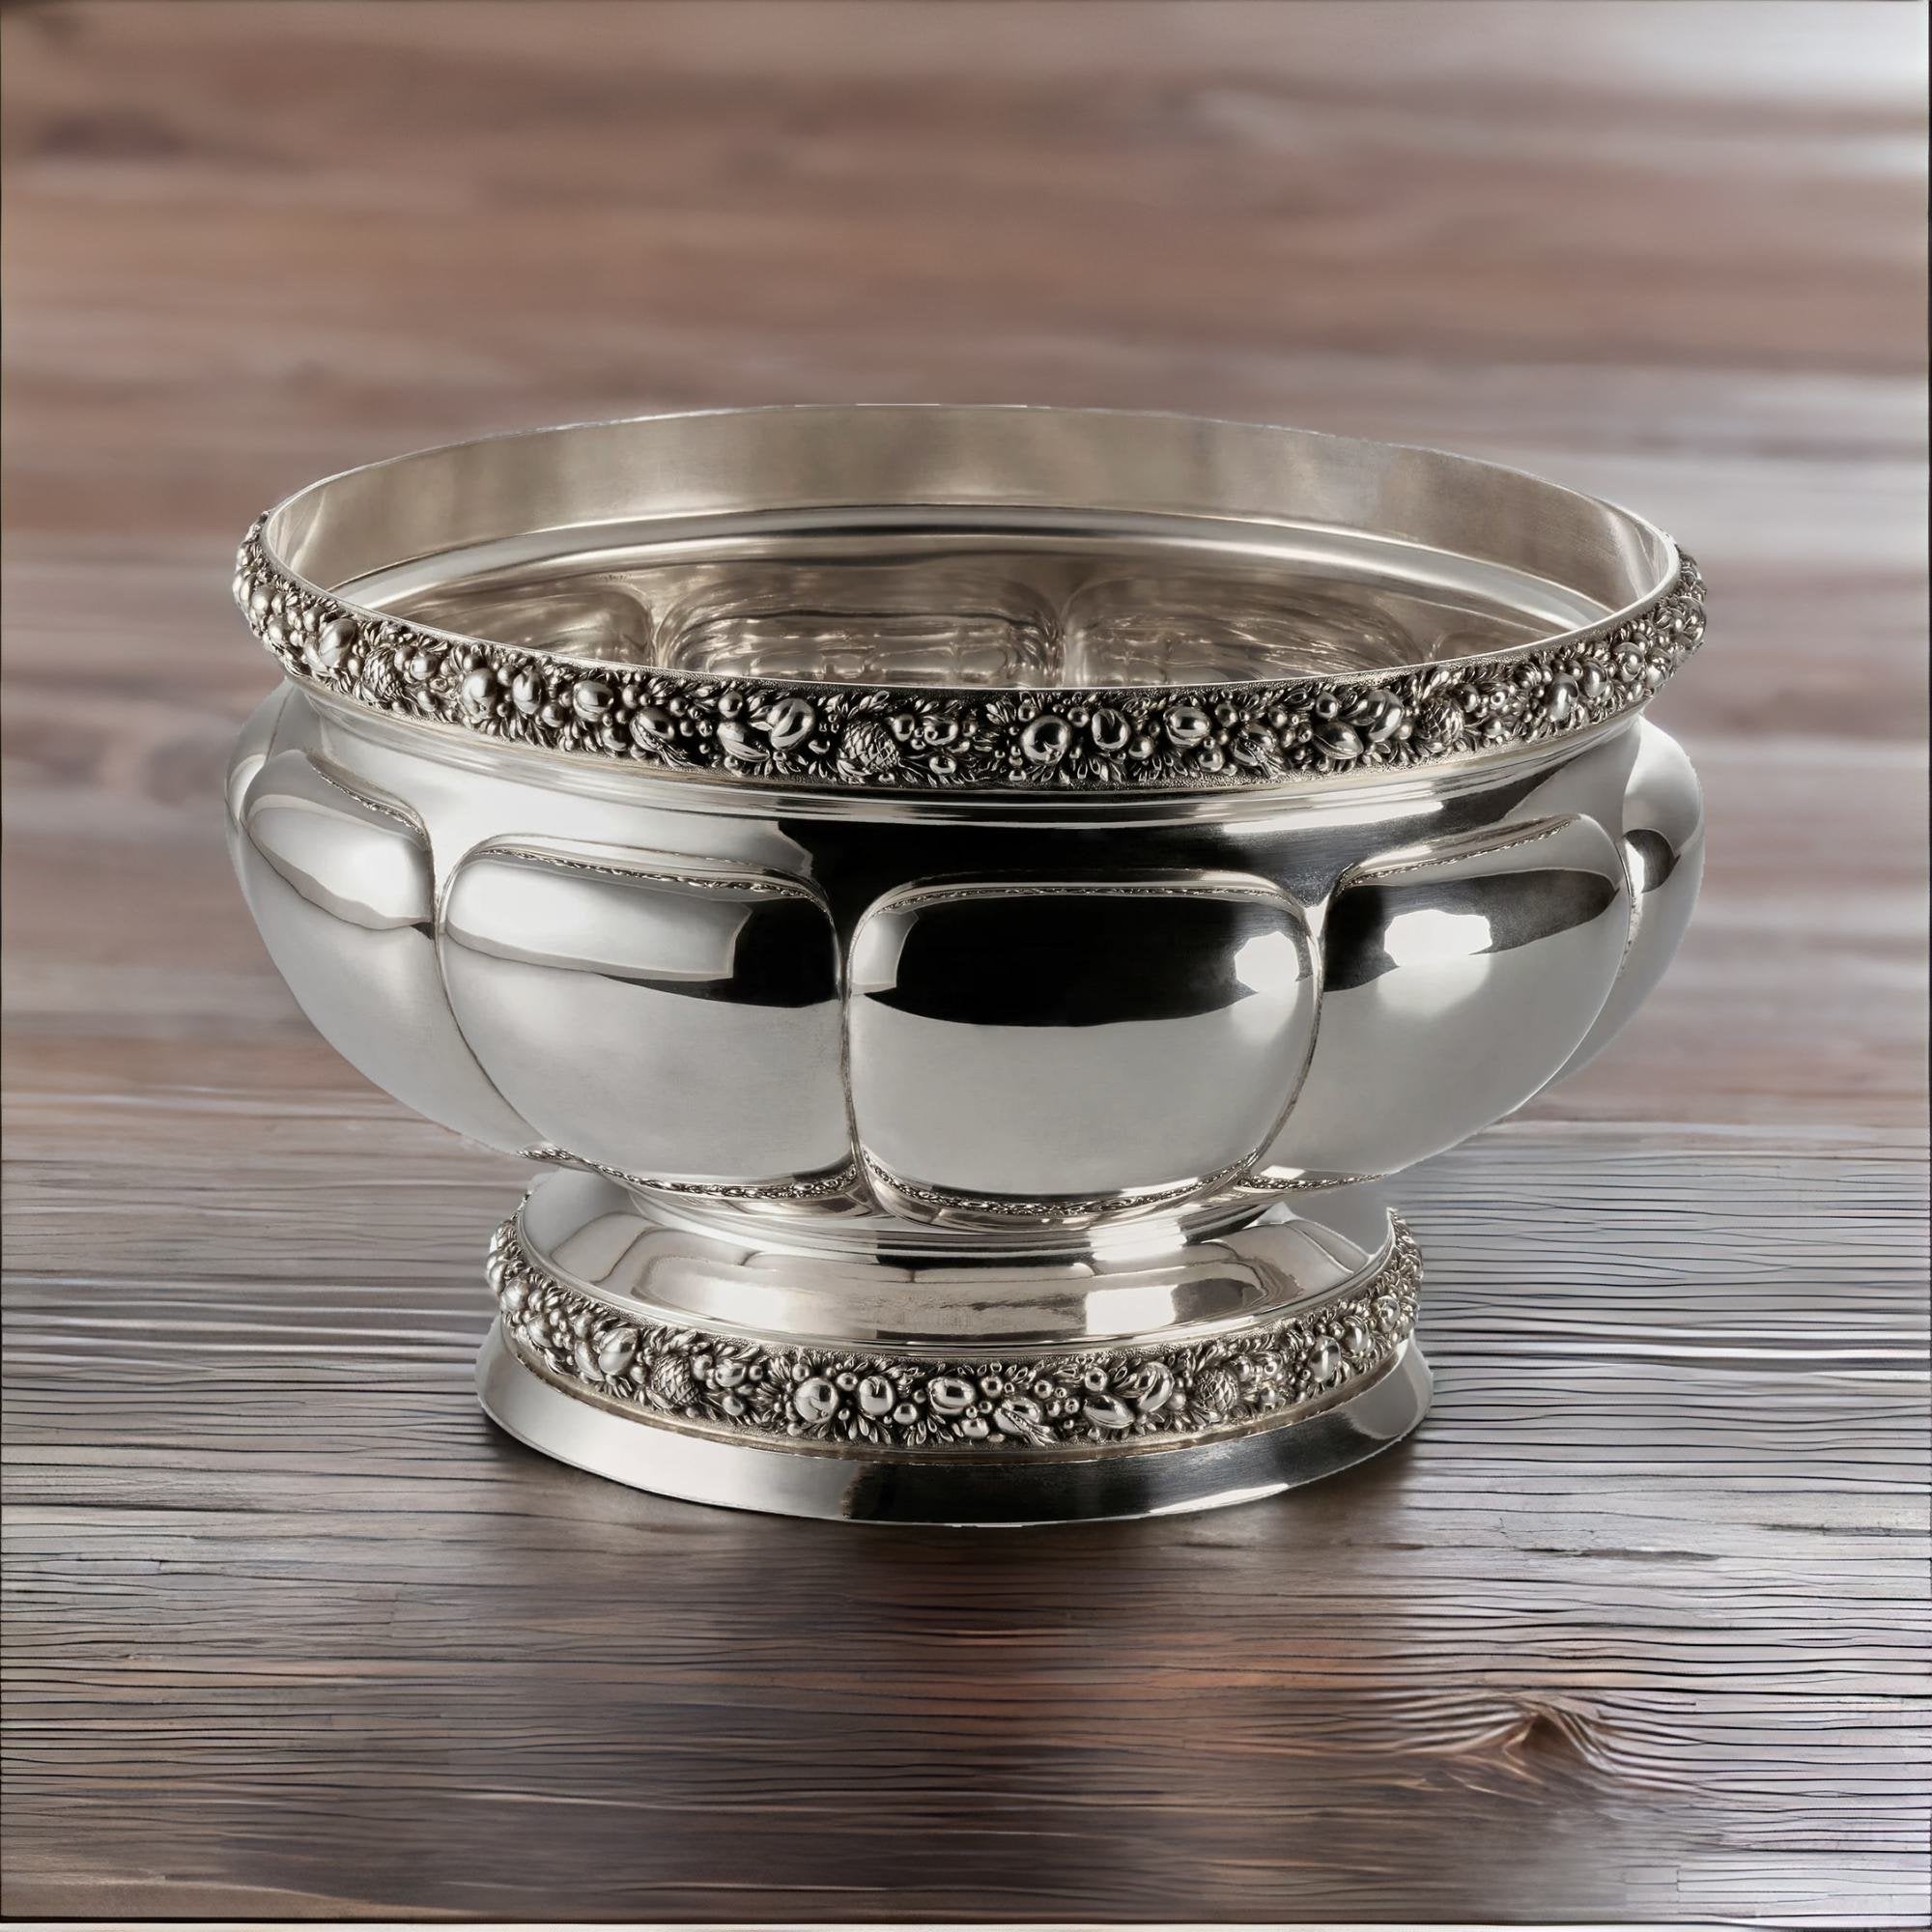 Handgefertigte Silberschale mit Blütenrand von Koch & Bergfeld - Bild 5